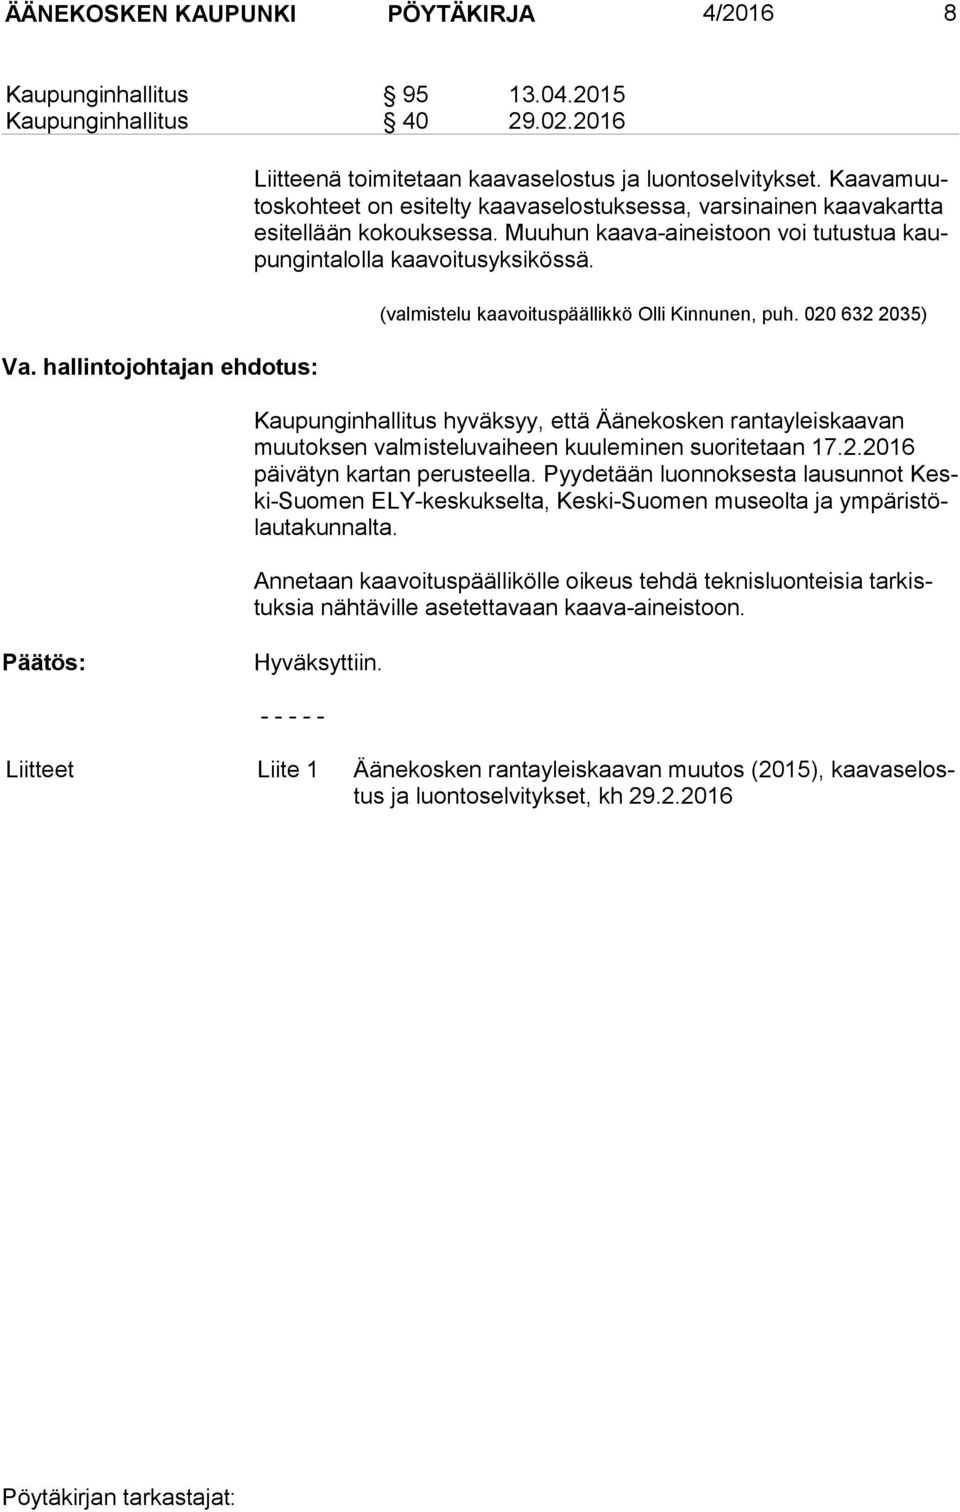 (valmistelu kaavoituspäällikkö Olli Kinnunen, puh. 020 632 2035) Kaupunginhallitus hyväksyy, että Äänekosken rantayleiskaavan muu tok sen valmisteluvaiheen kuuleminen suoritetaan 17.2.2016 päi vä tyn kartan perusteella.